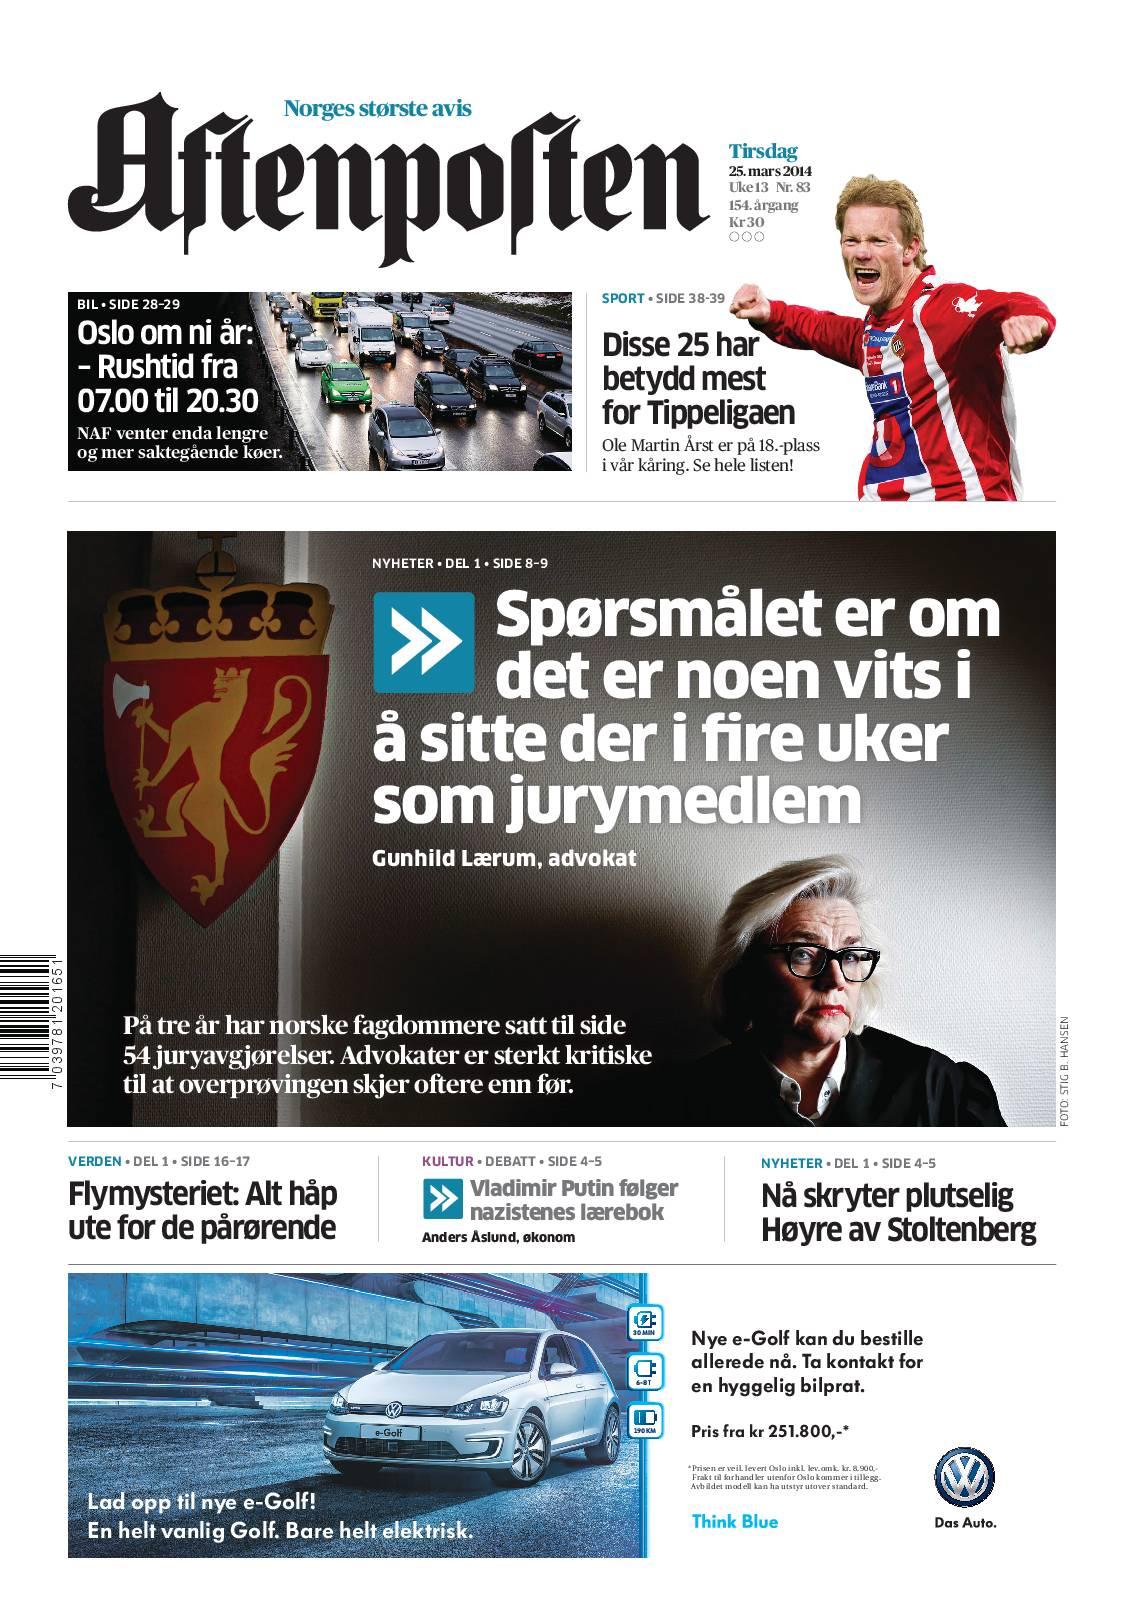 I går skrev Aftenposten at fagdommerne oftere enn før setter juryens kjennelse til side i lagrettesaker. 